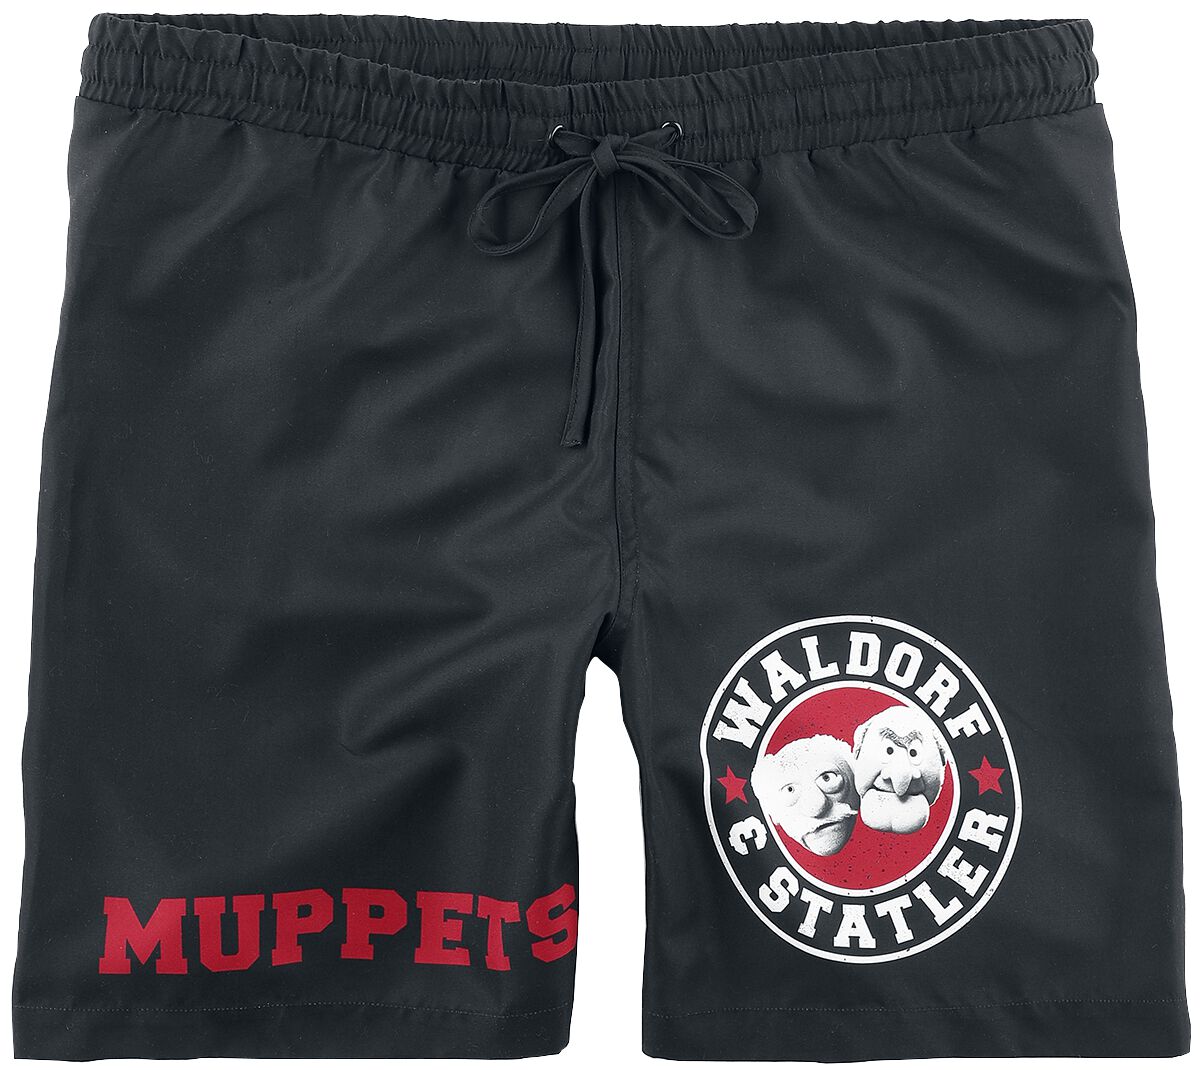 Die Muppets Badeshort - Waldorf & Statler - Old School - S bis XL - für Männer - Größe XL - schwarz  - EMP exklusives Merchandise!